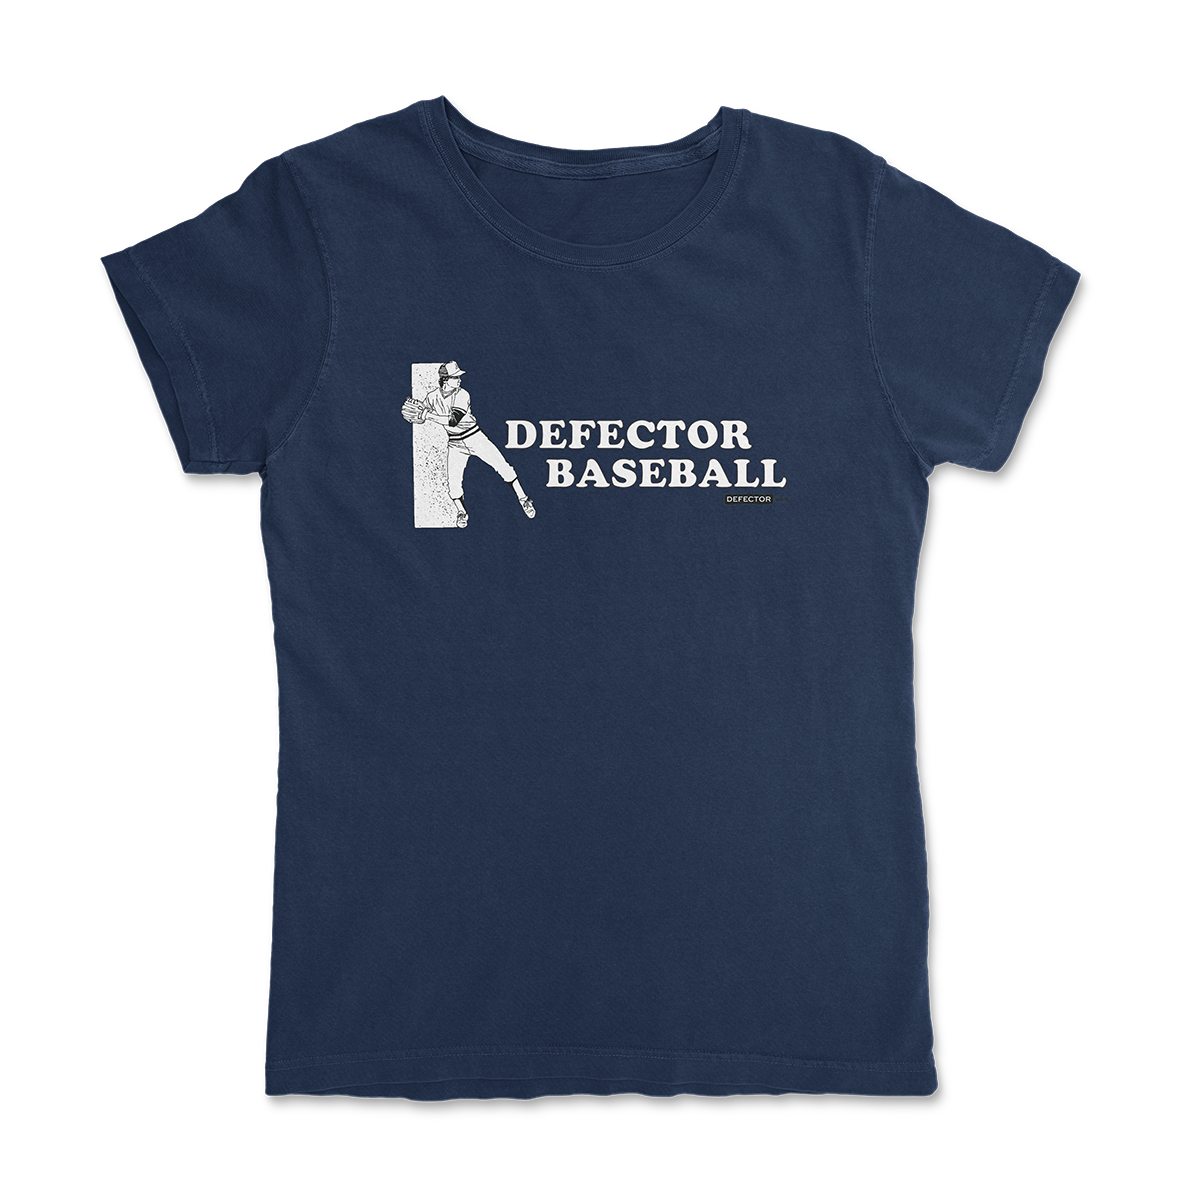 Defector Baseball Tee